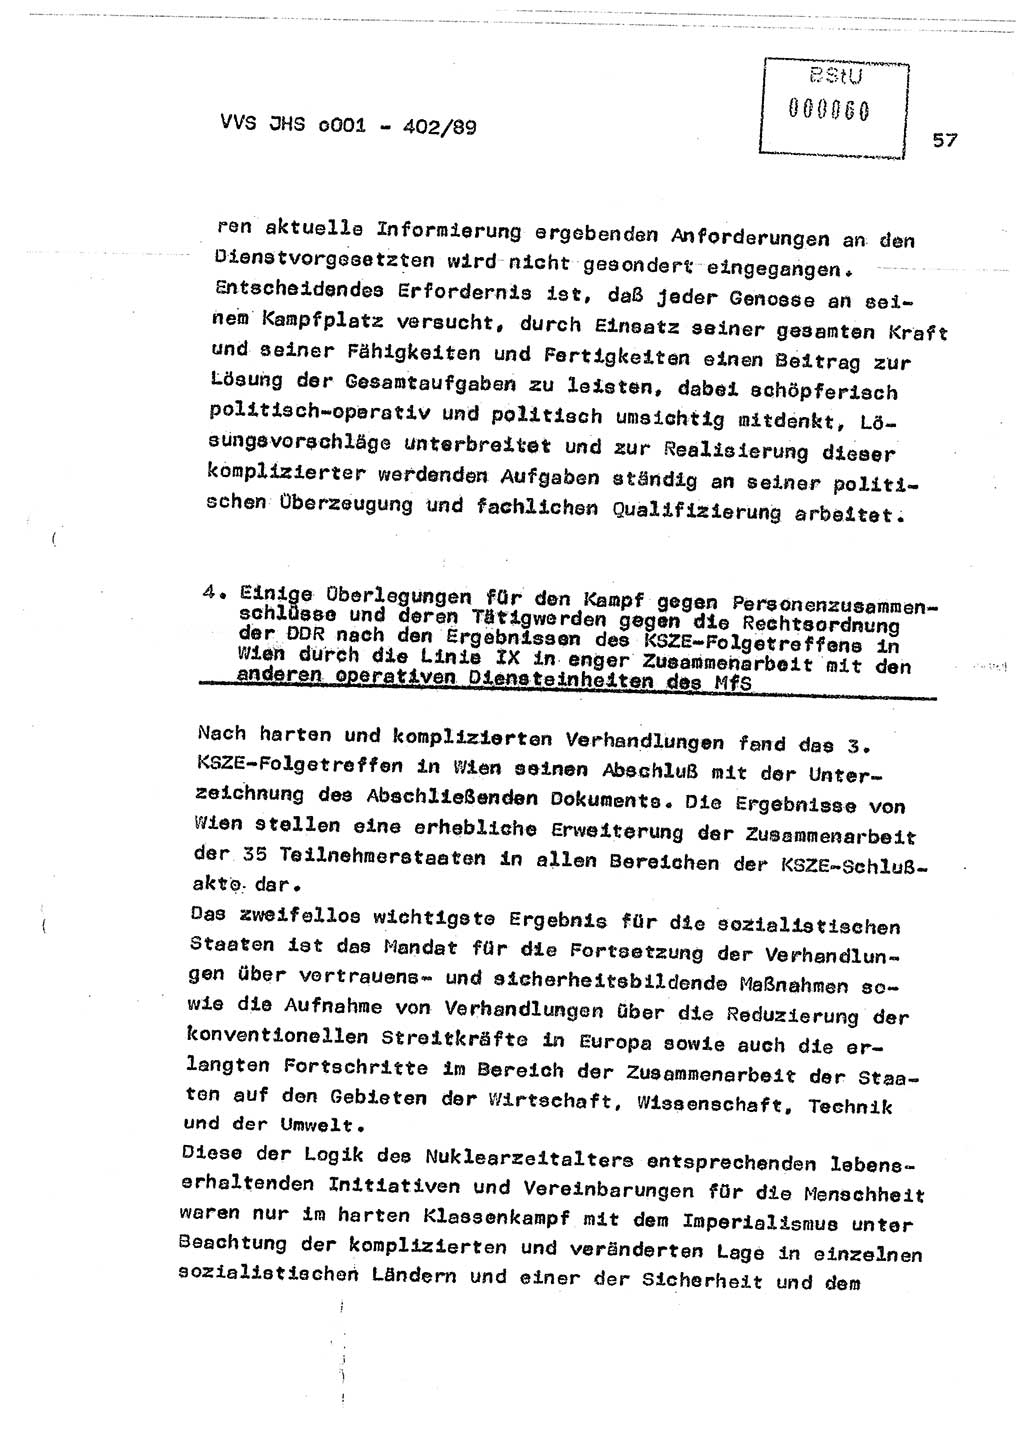 Diplomarbeit Major Günter Müller (HA Ⅸ/9), Ministerium für Staatssicherheit (MfS) [Deutsche Demokratische Republik (DDR)], Juristische Hochschule (JHS), Vertrauliche Verschlußsache (VVS) o001-402/89, Potsdam 1989, Seite 57 (Dipl.-Arb. MfS DDR JHS VVS o001-402/89 1989, S. 57)